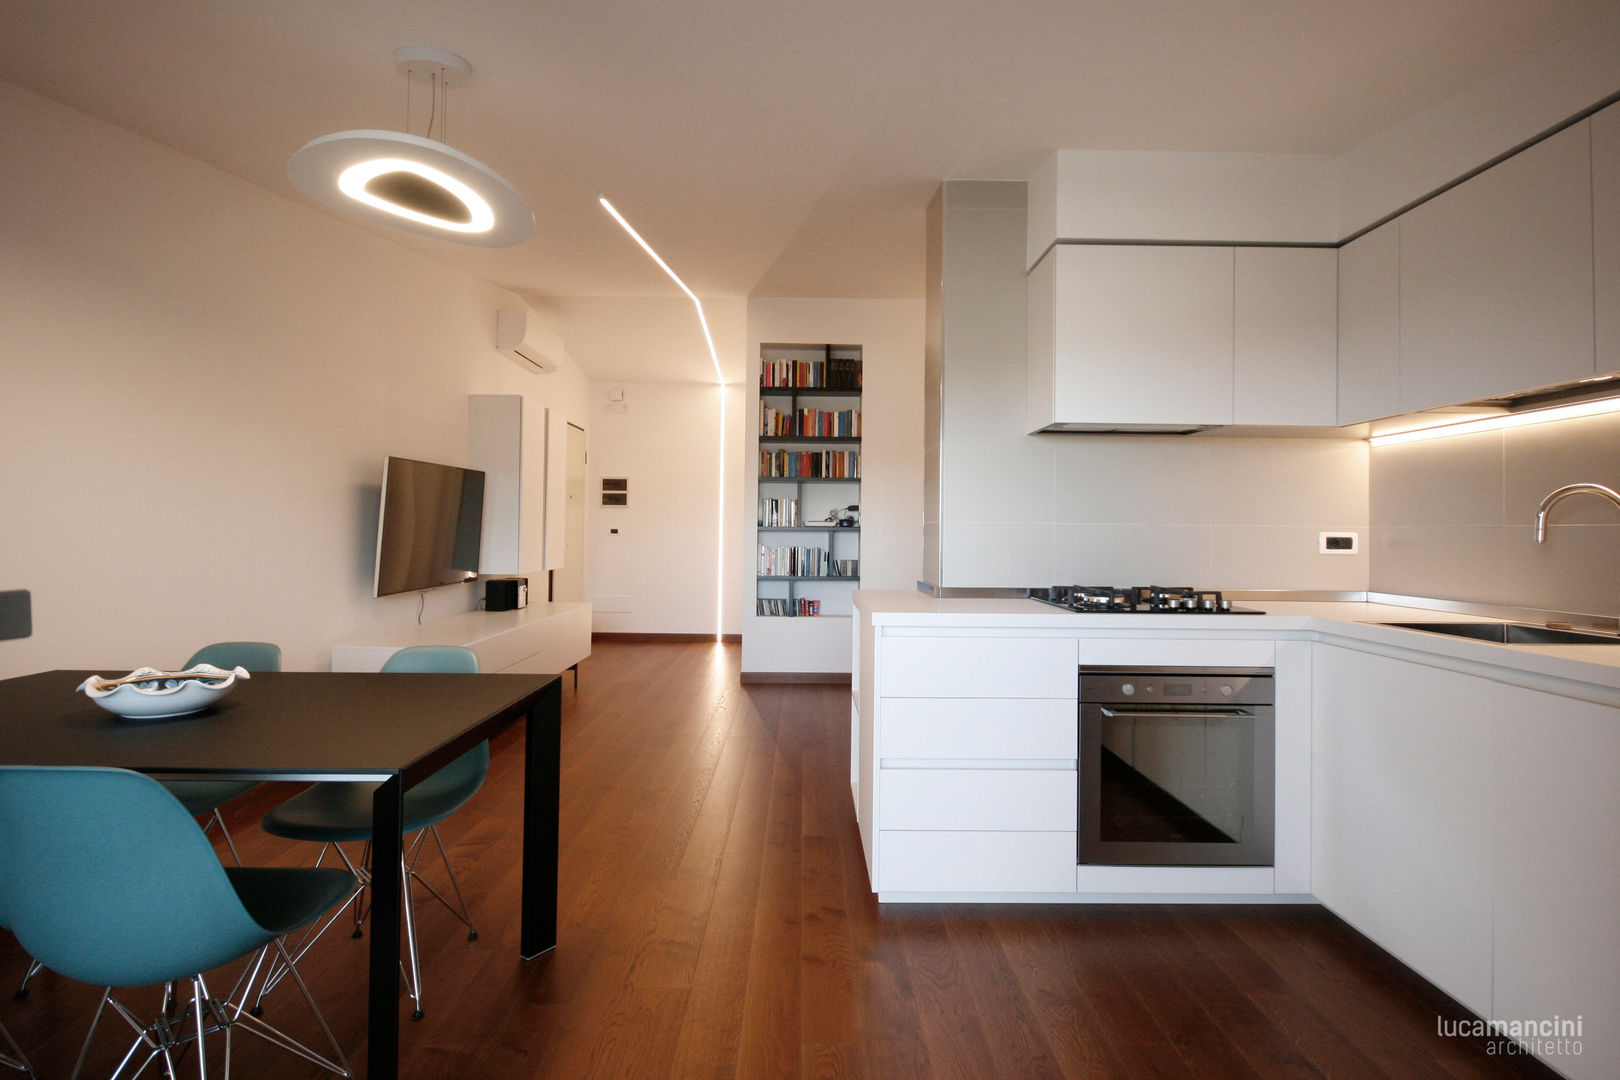 Casa sul lungomare, Luca Mancini | Architetto Luca Mancini | Architetto Salones de estilo moderno